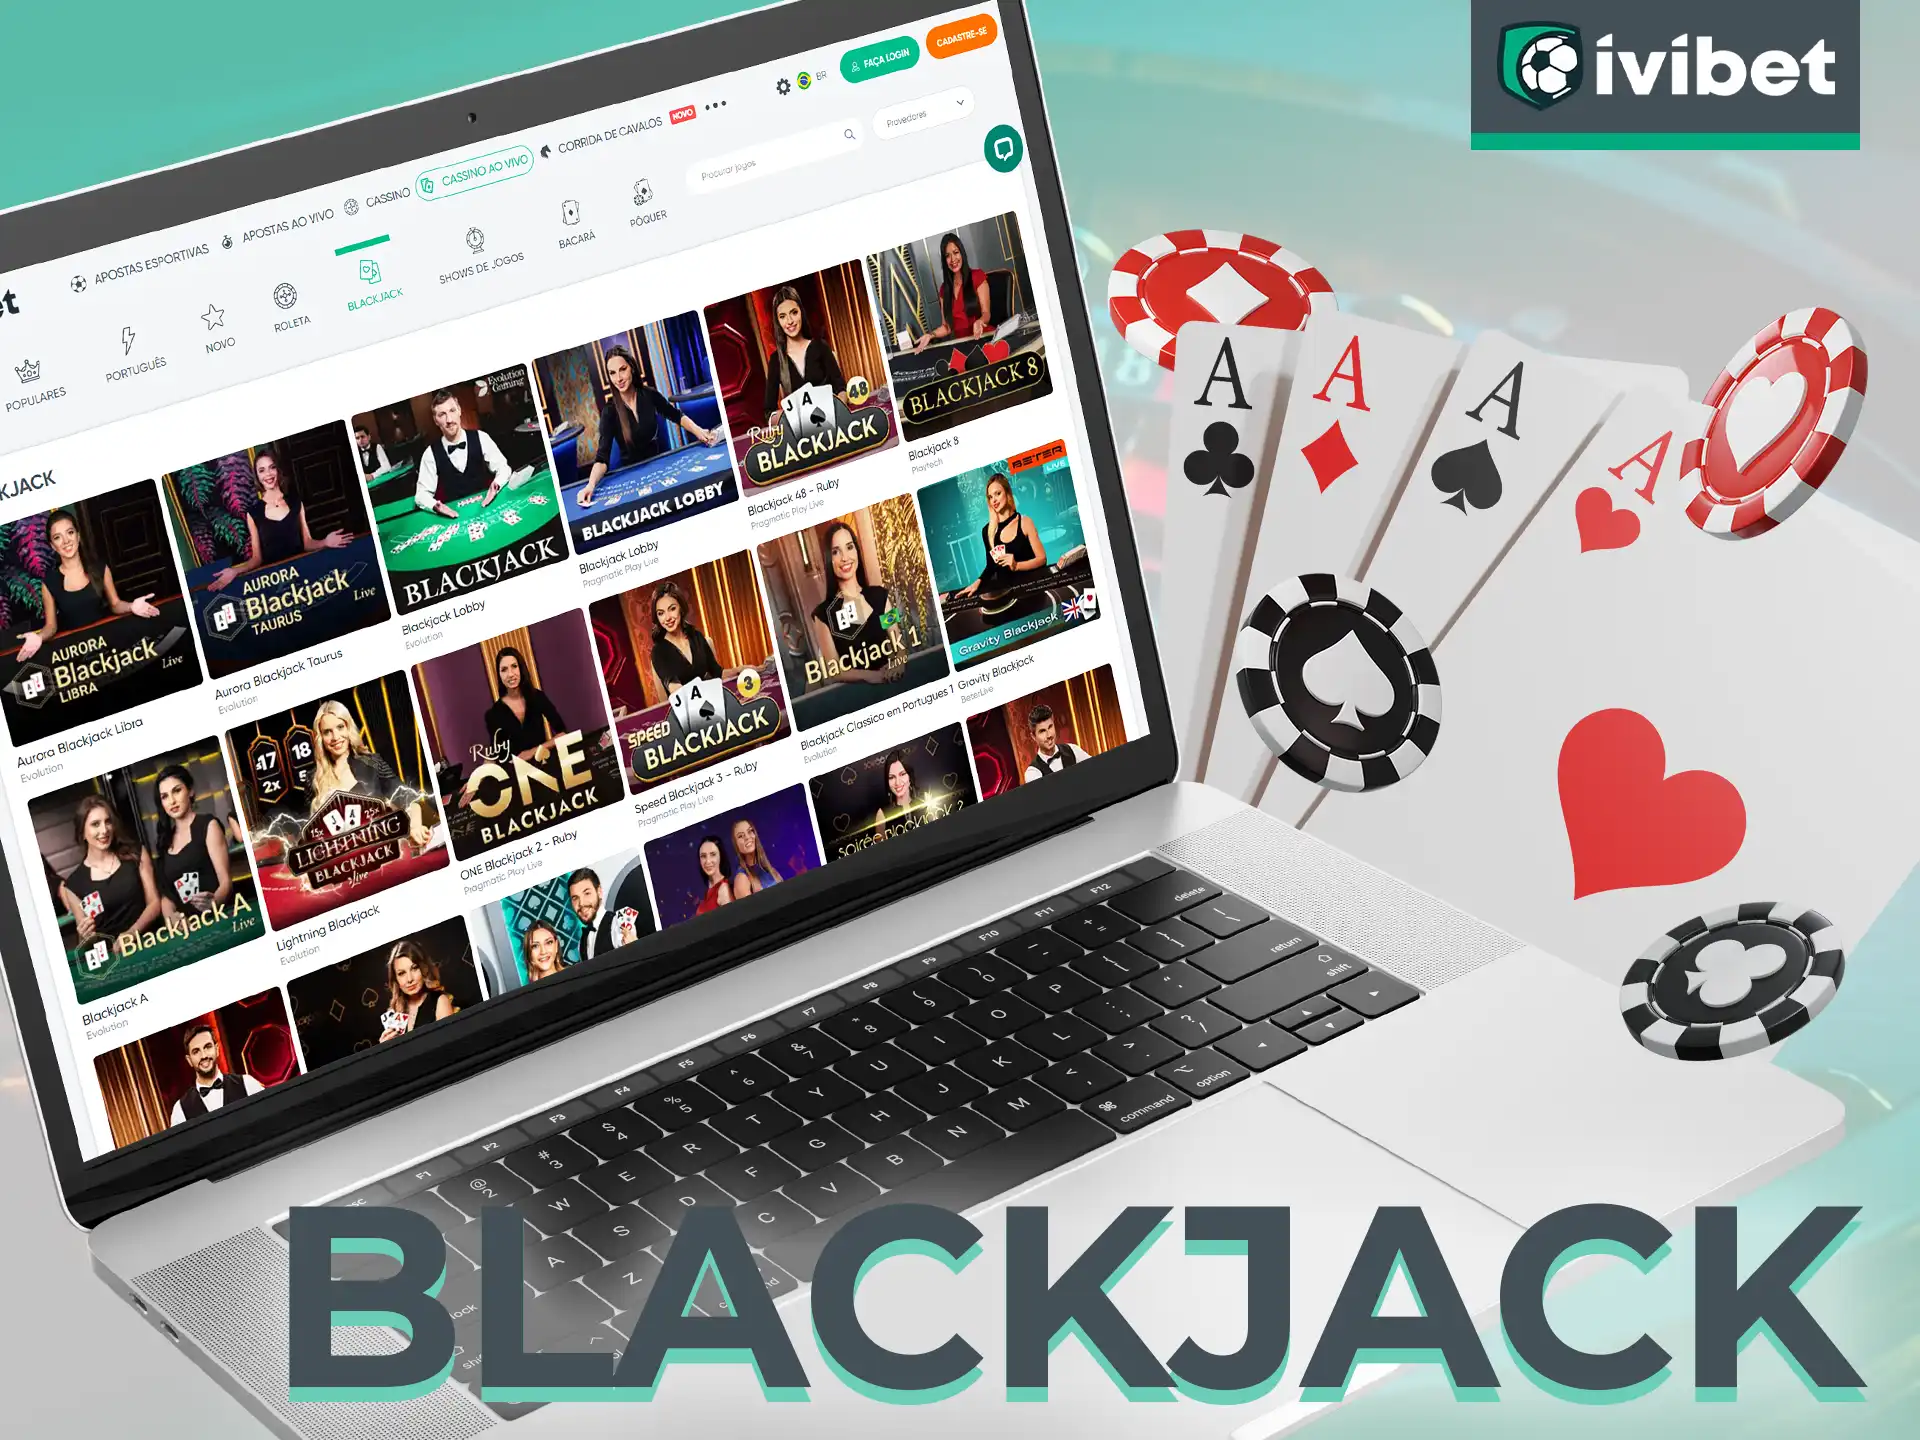 O jogo de cartas Blackjack tem muitas versões diferentes no site da Ivibet.